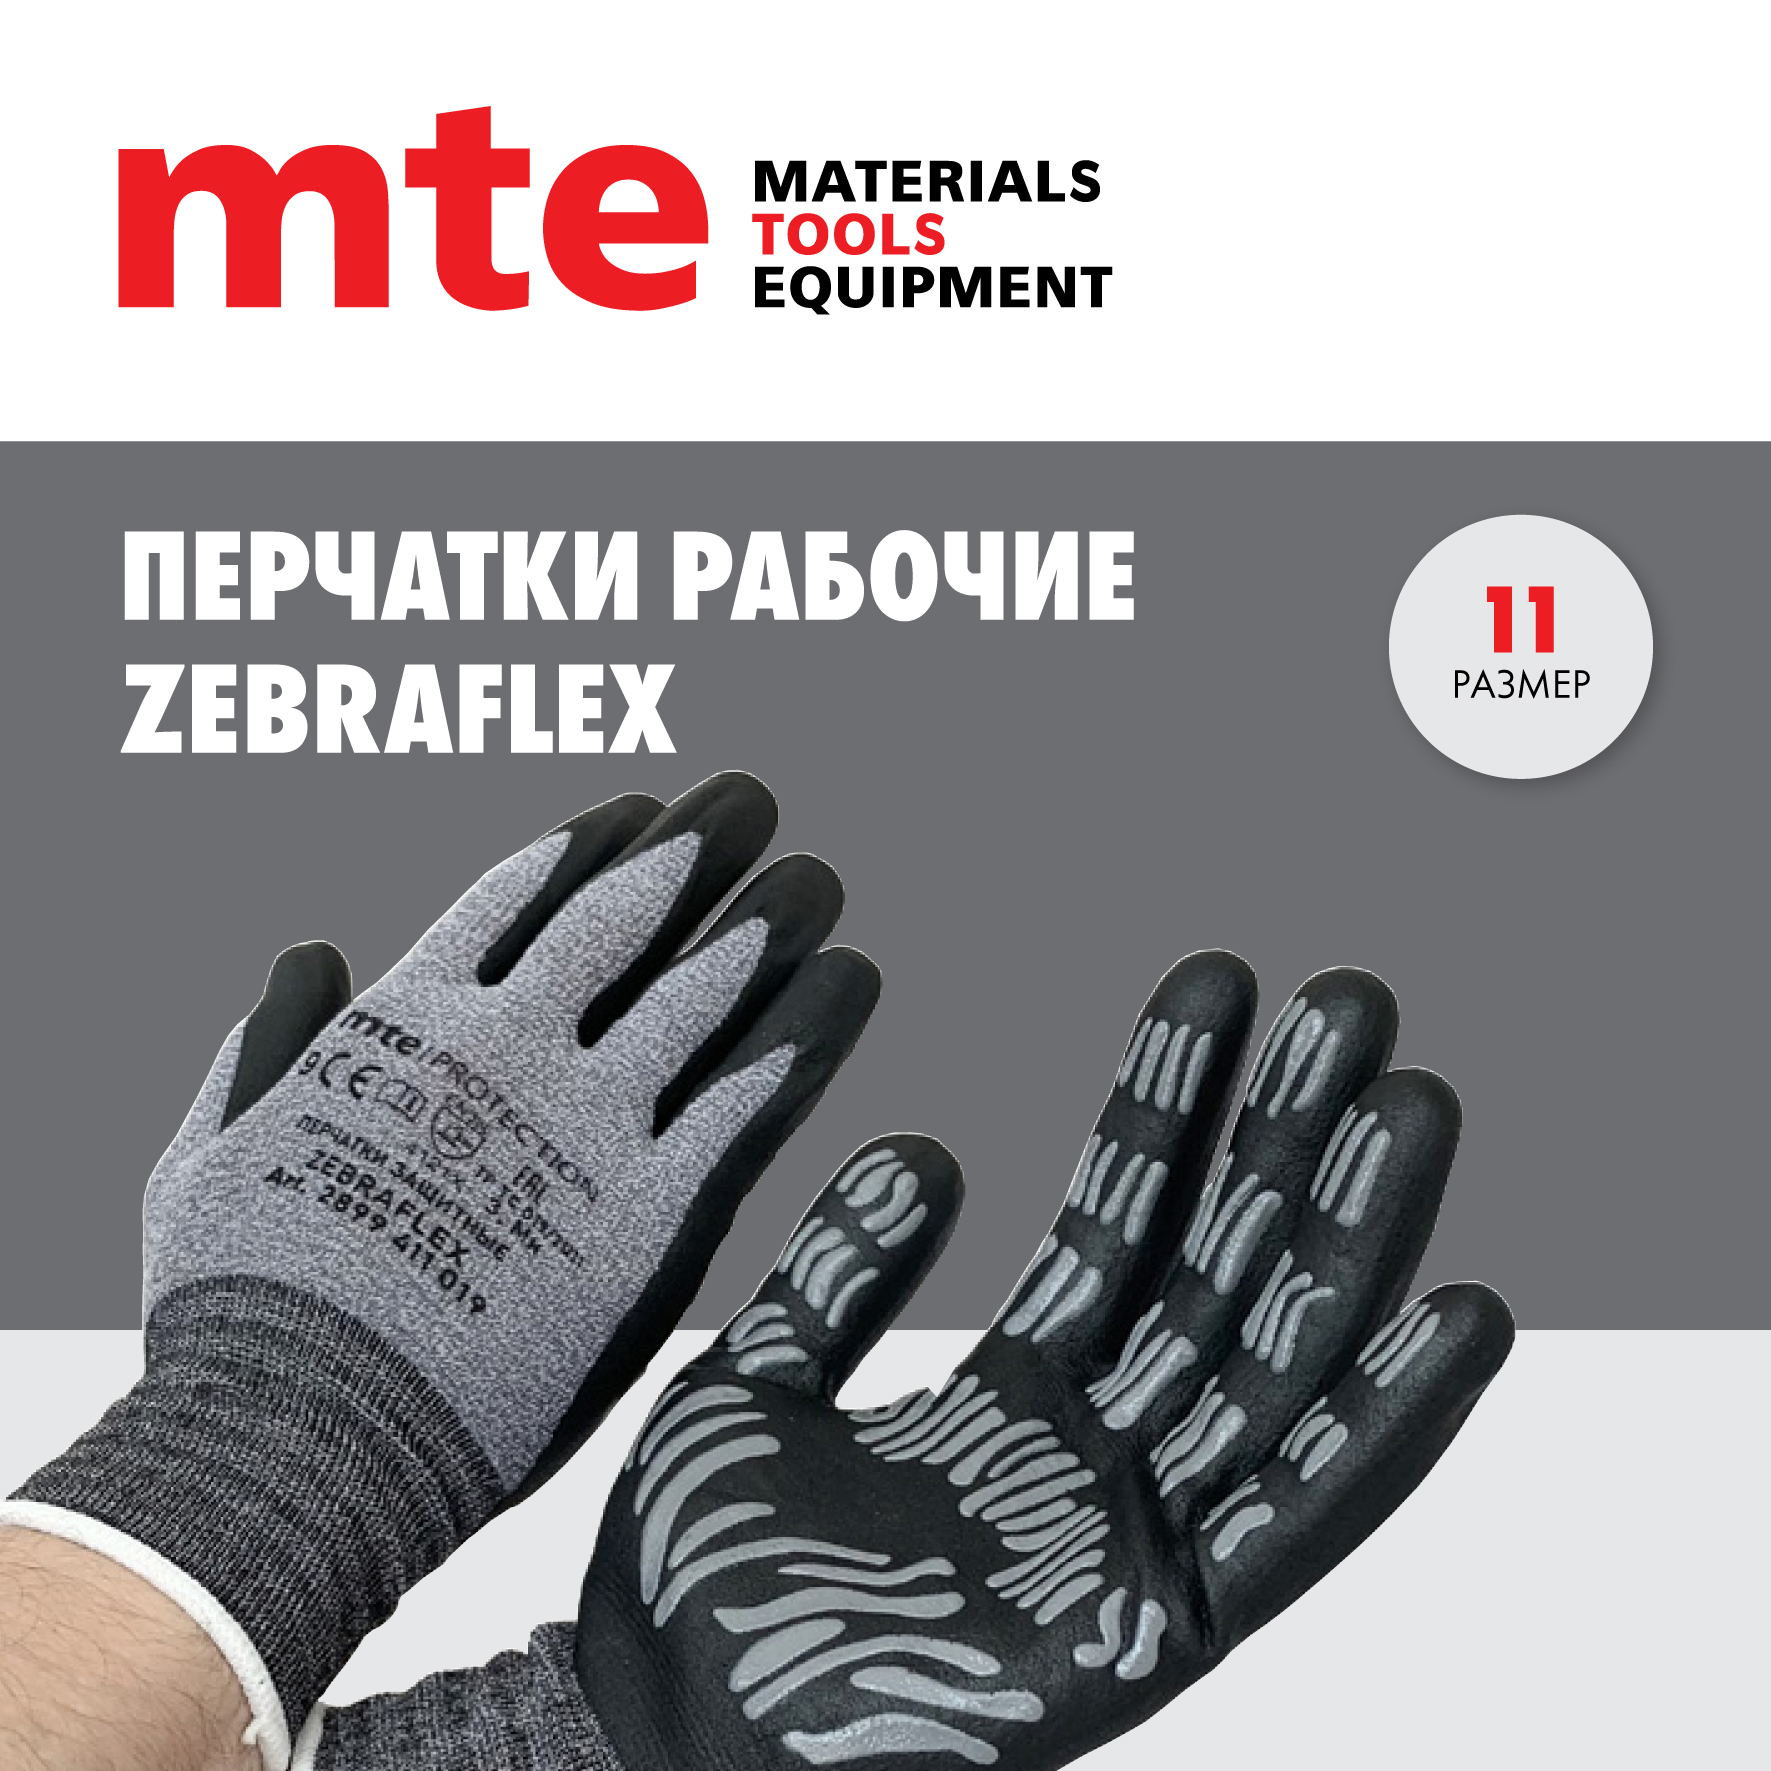 Универсальные защитные перчатки mte ZEBRAFLEX Р.11 защитные рабочие женские перчатки sapset